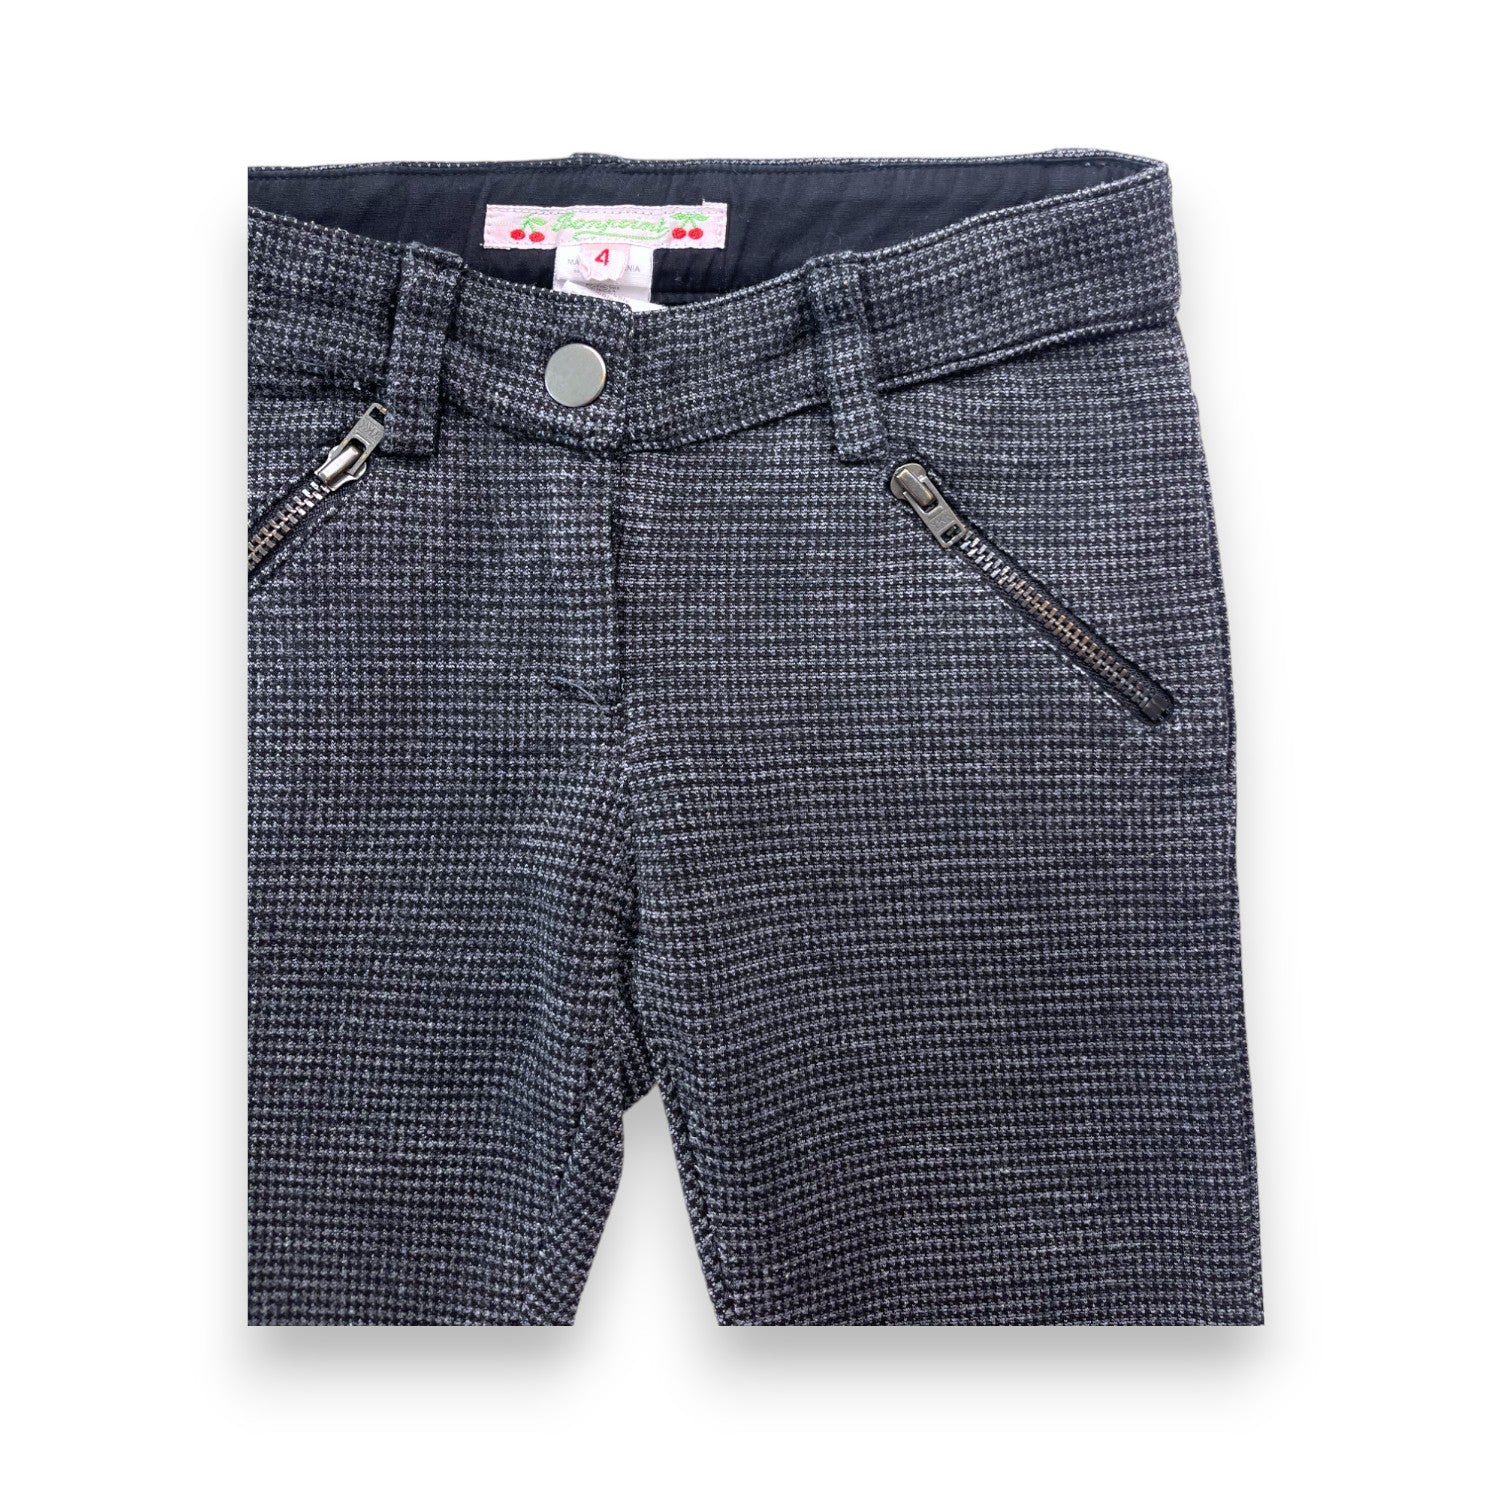 BONPOINT - Pantalon motif pied de poule gris et noir - 4 ans